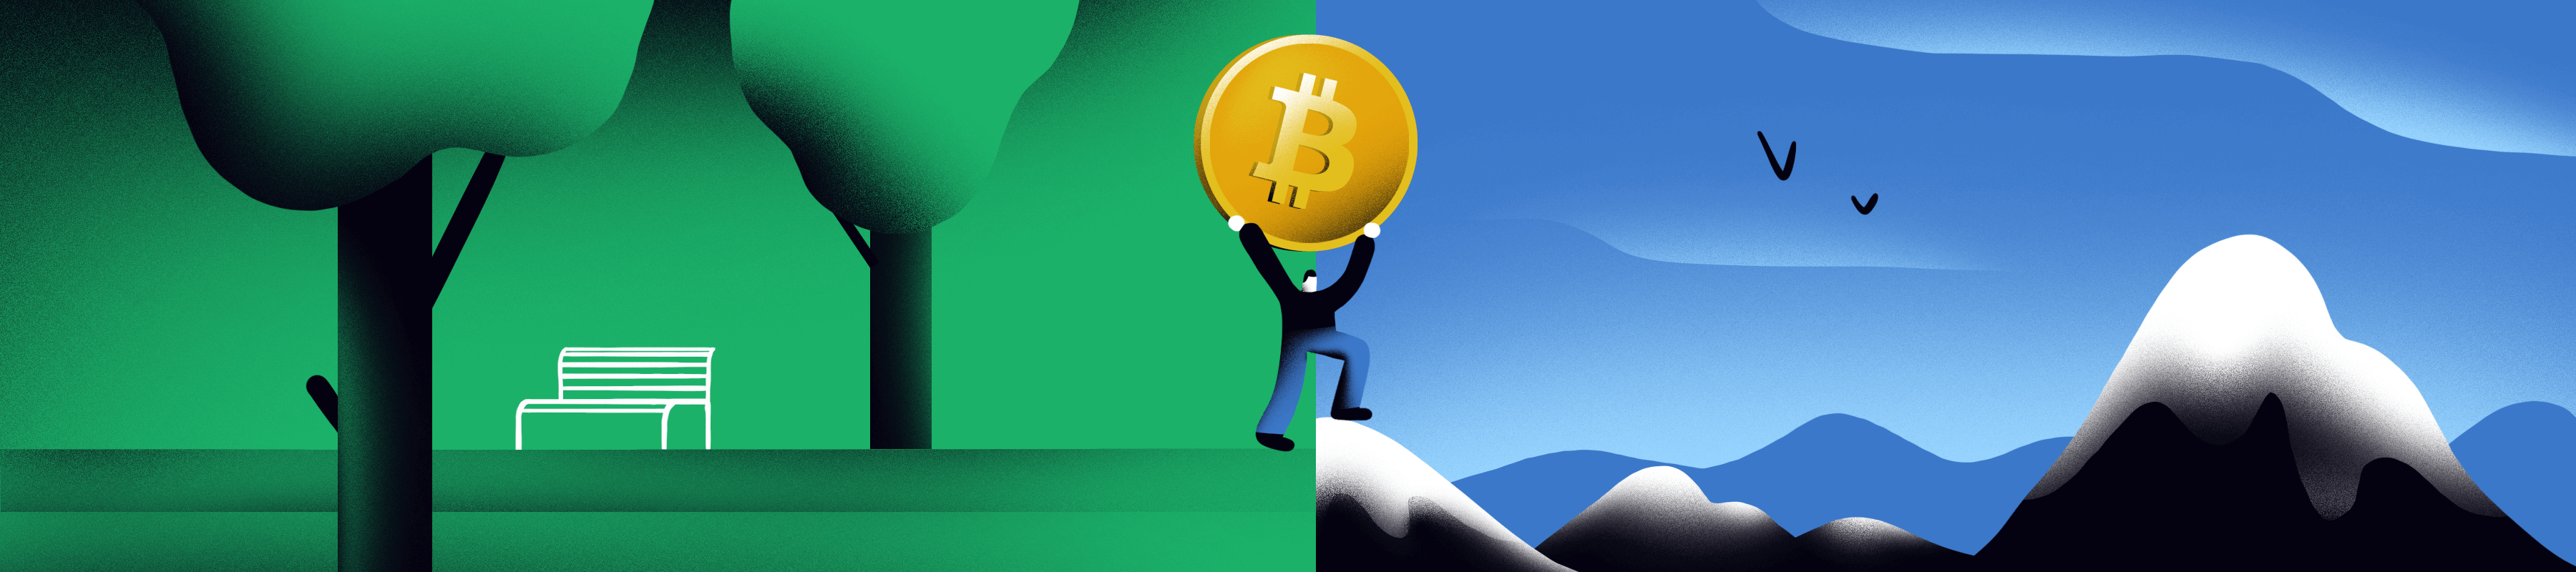 Apa itu Bitcoin Halving?